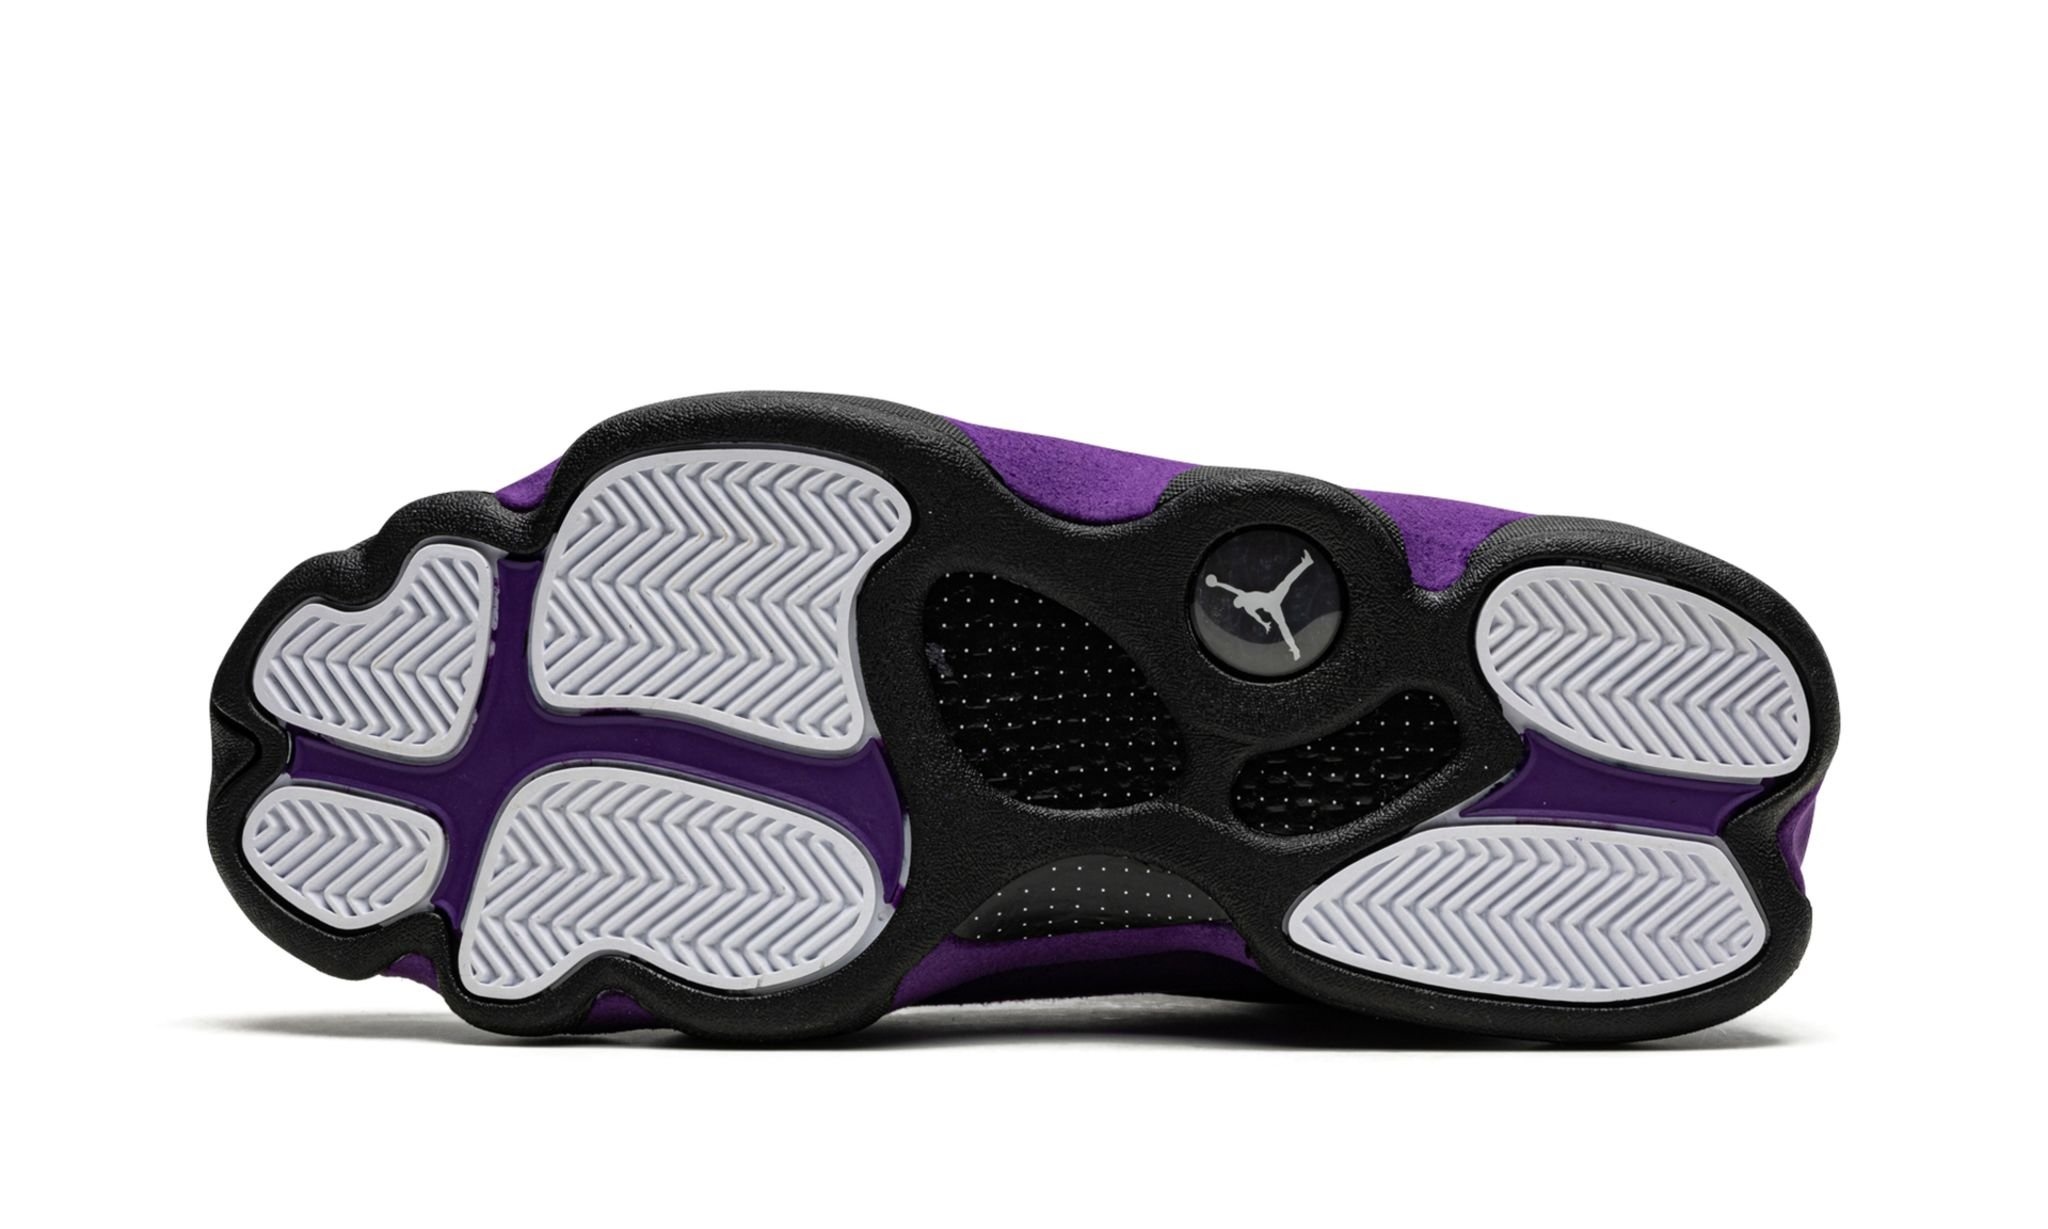 Air Jordan 13 Retro "Court Purple" - 5